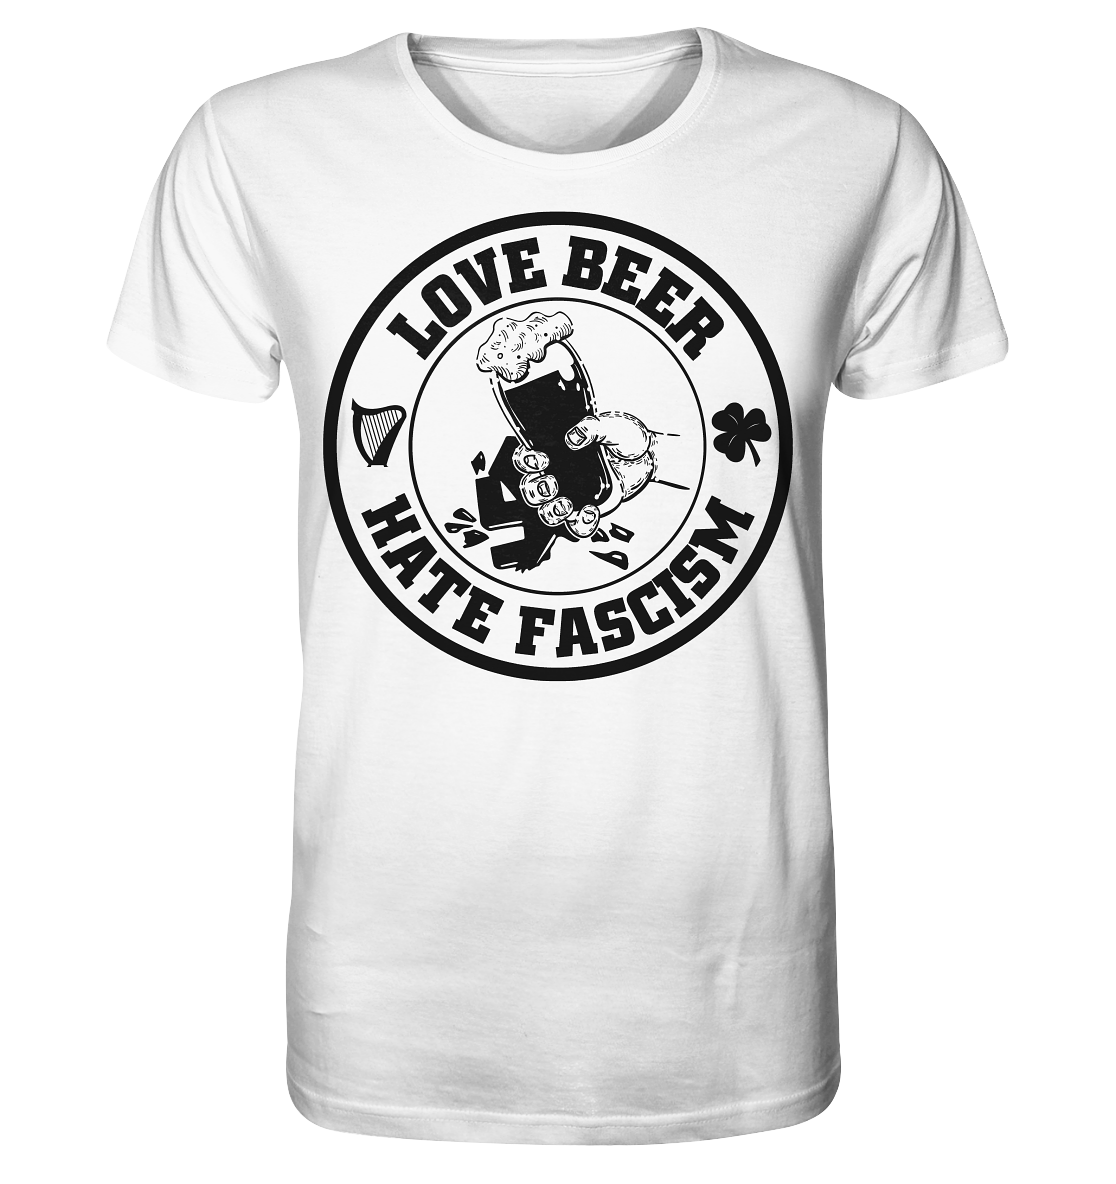 Love Beer - Hate Fascism - Organic Shirt